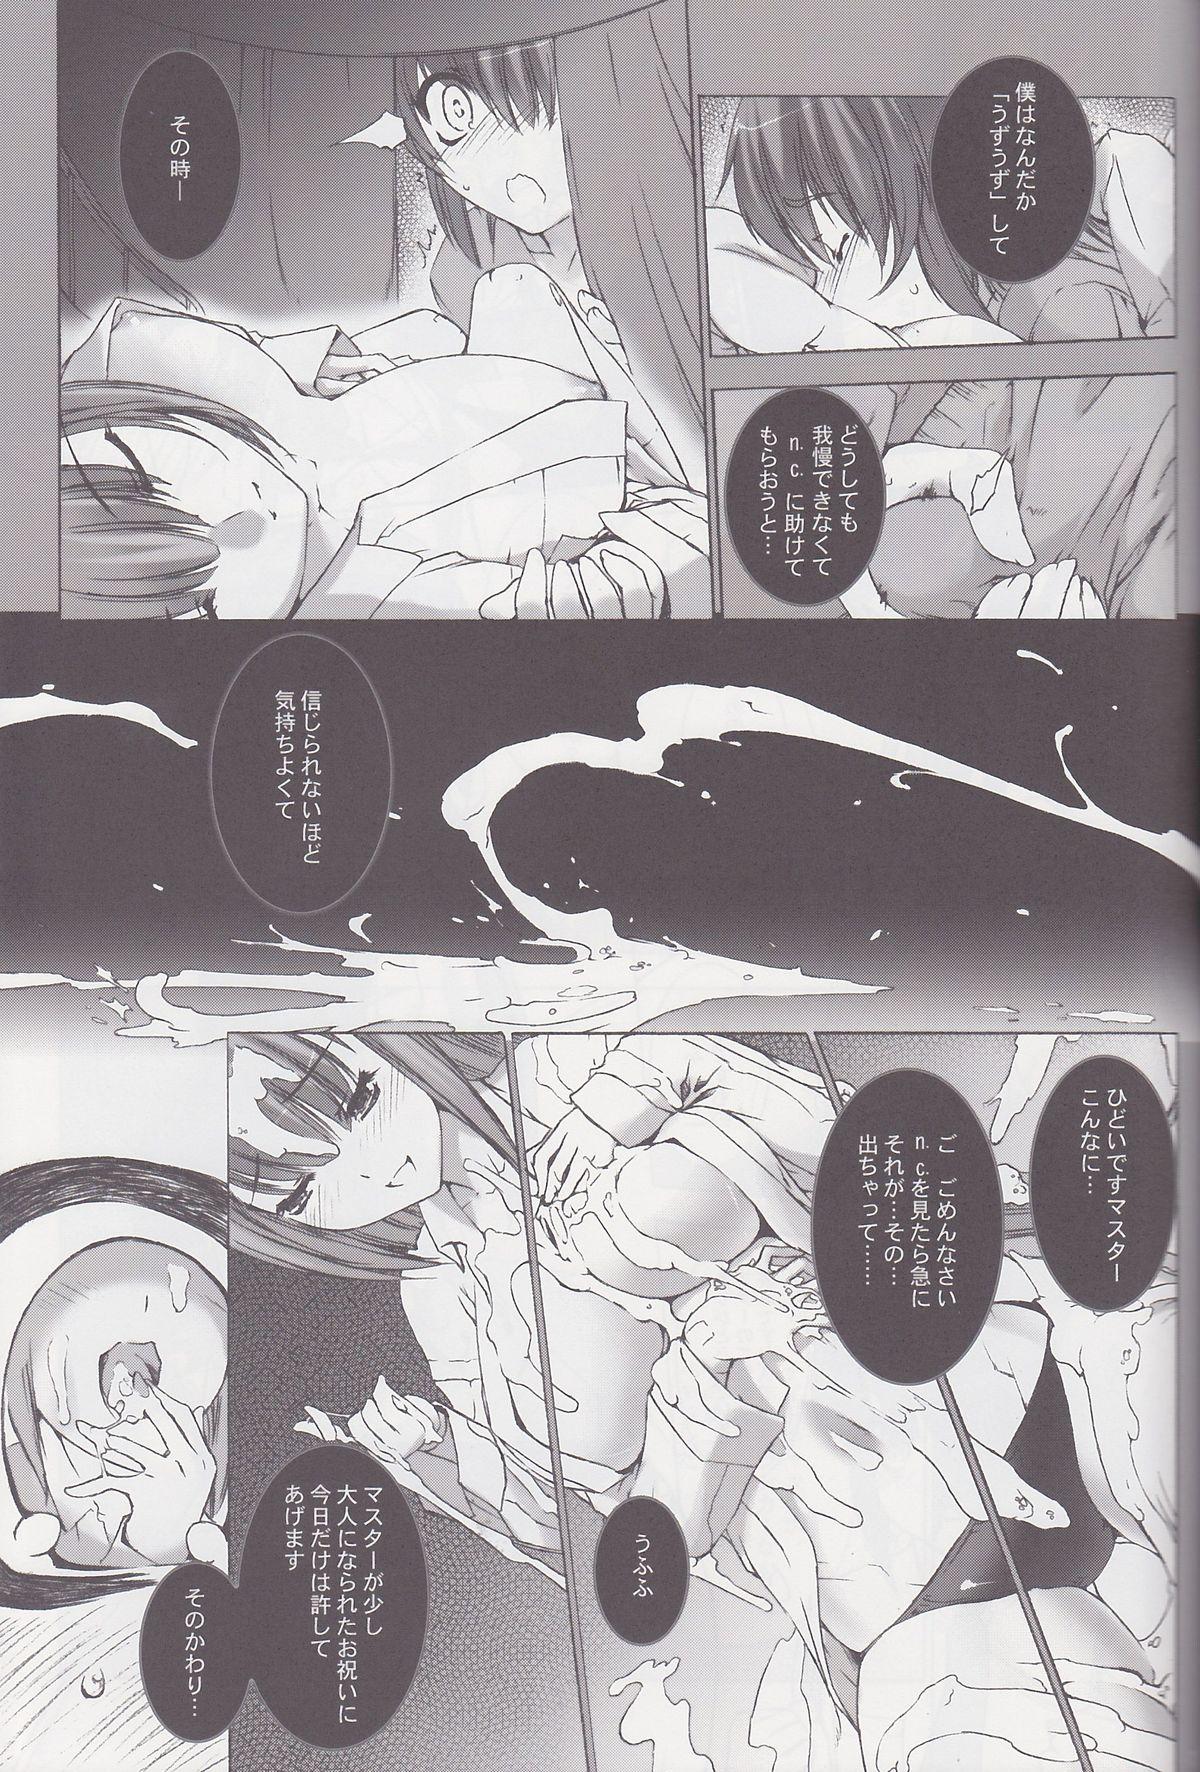 Masterbate Palm top mistress - Busou shinki Oral Sex - Page 12